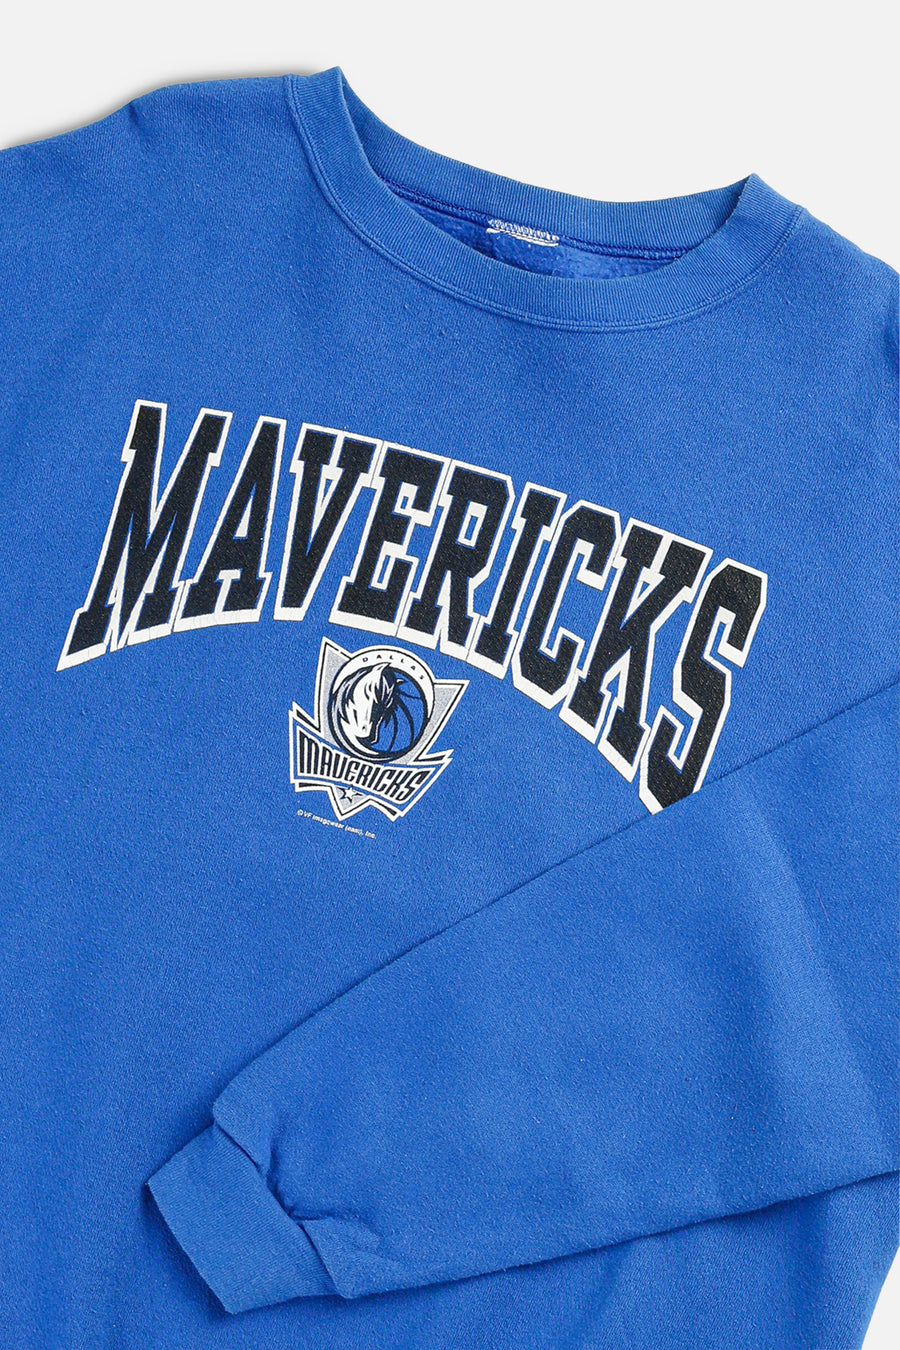 Vintage Dallas Mavericks NBA Sweatshirt - XL